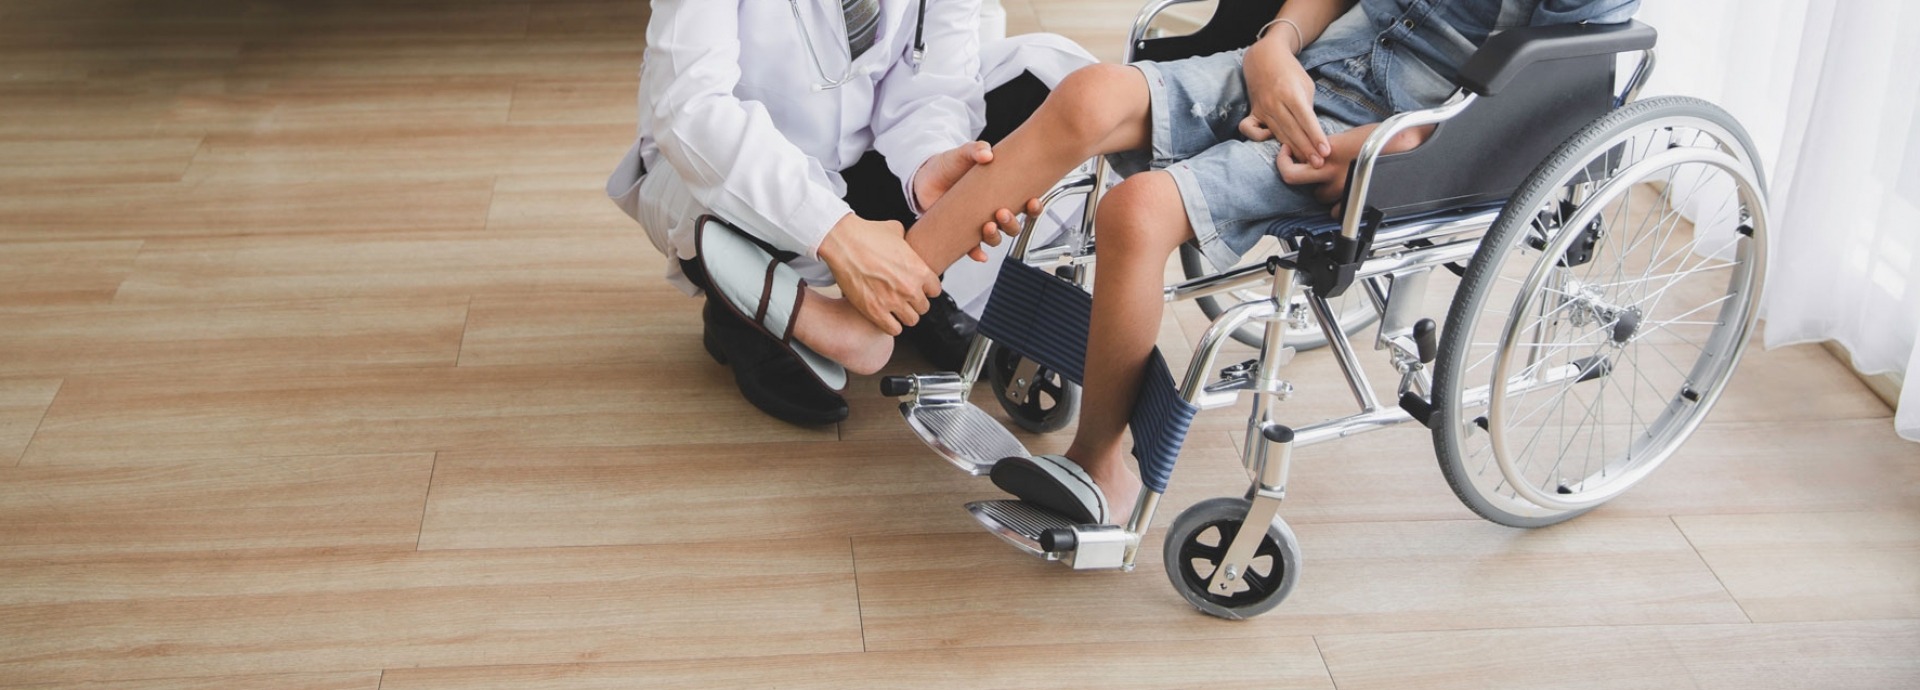 Arts die been van patiënt in rolstoel in het ziekenhuis controleert